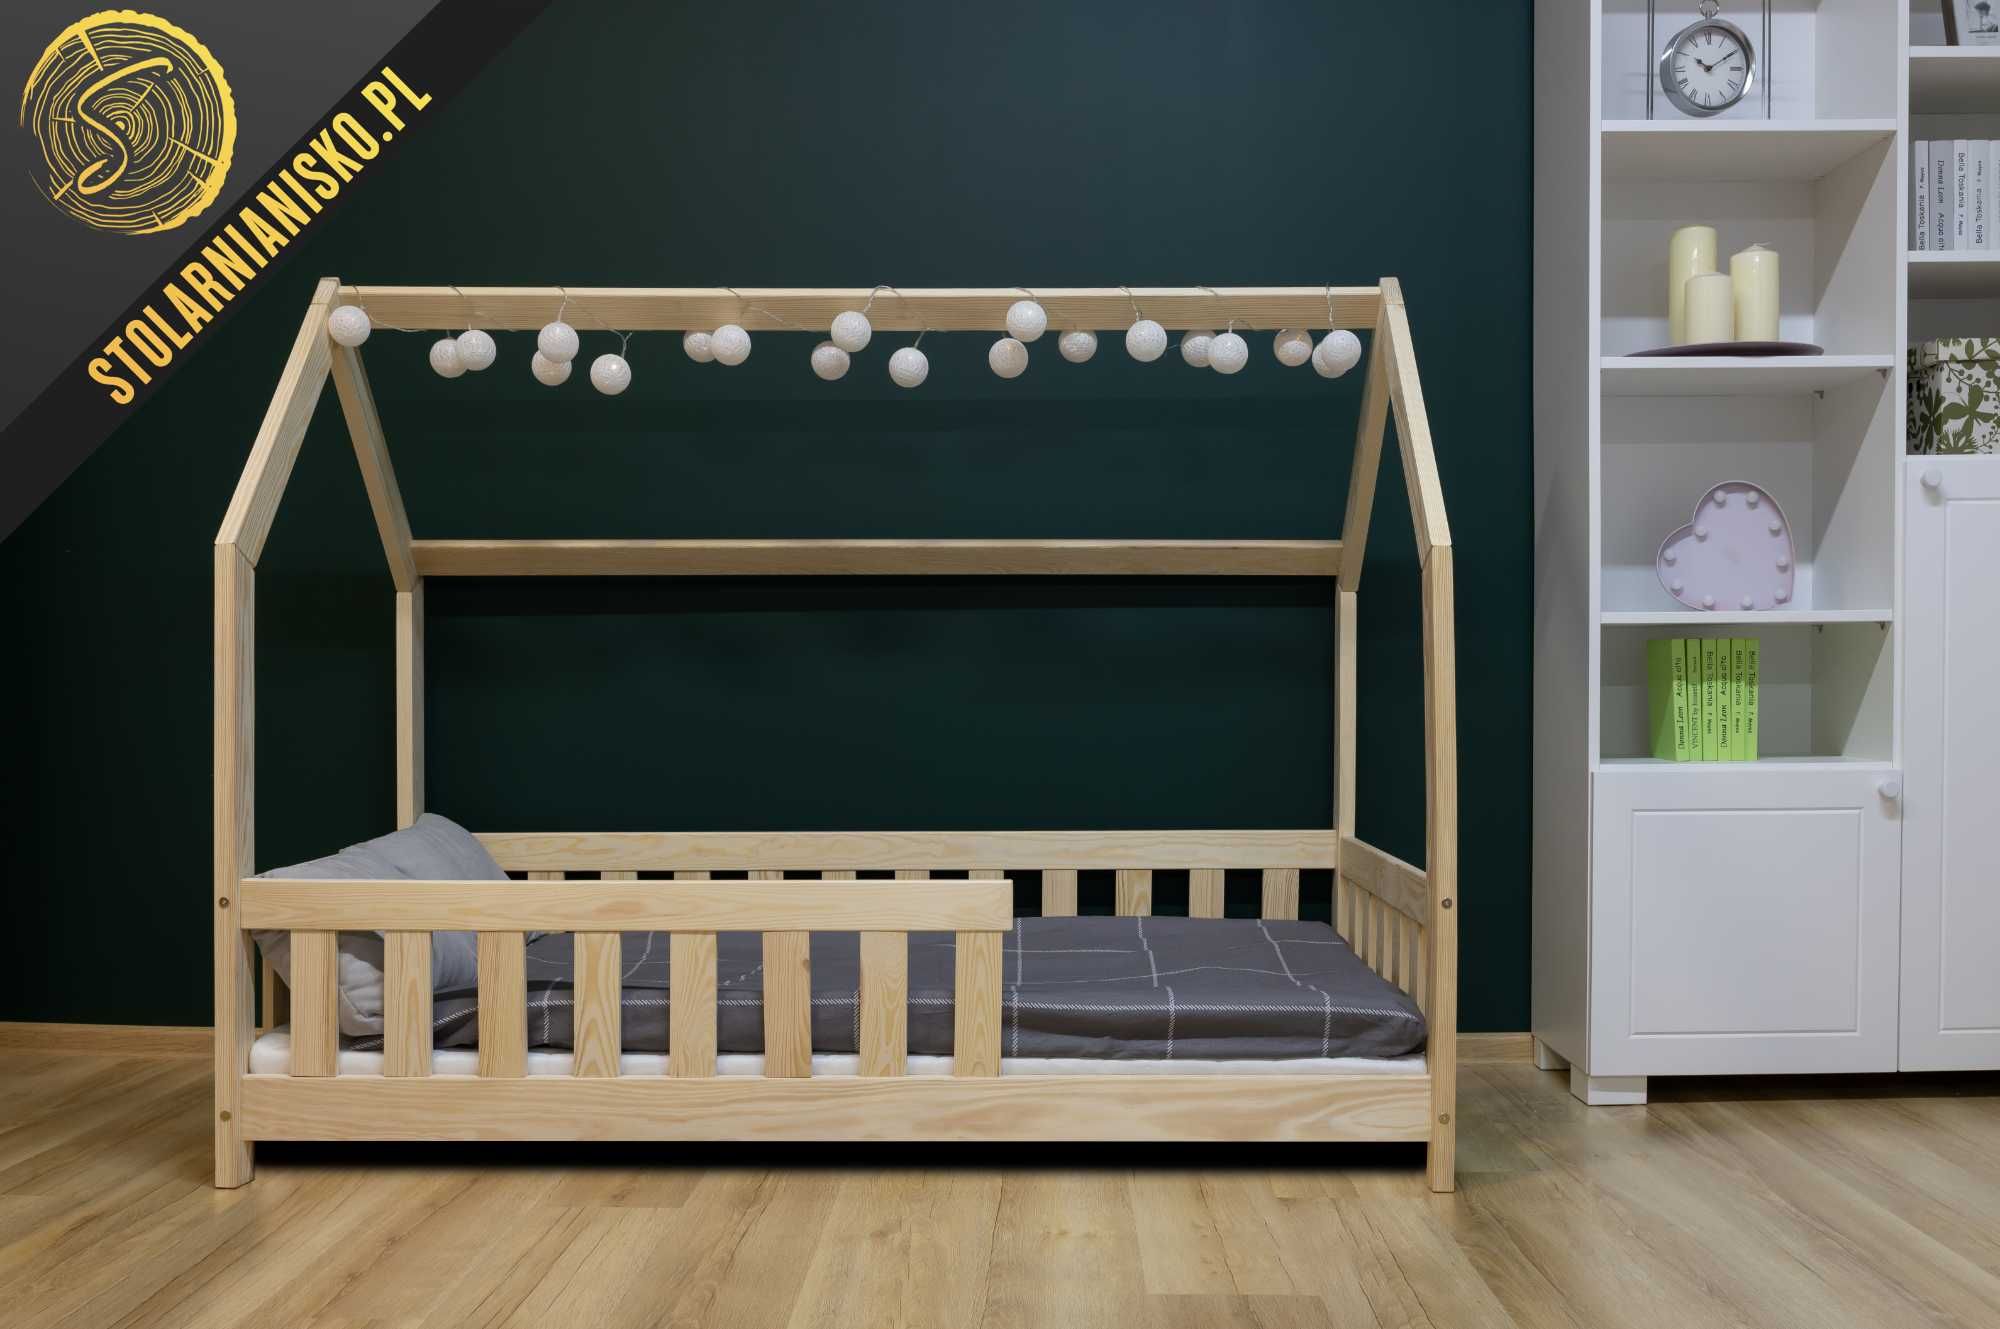 Łóżko domek dla dziecka 80x160 nielakierowane. Producent